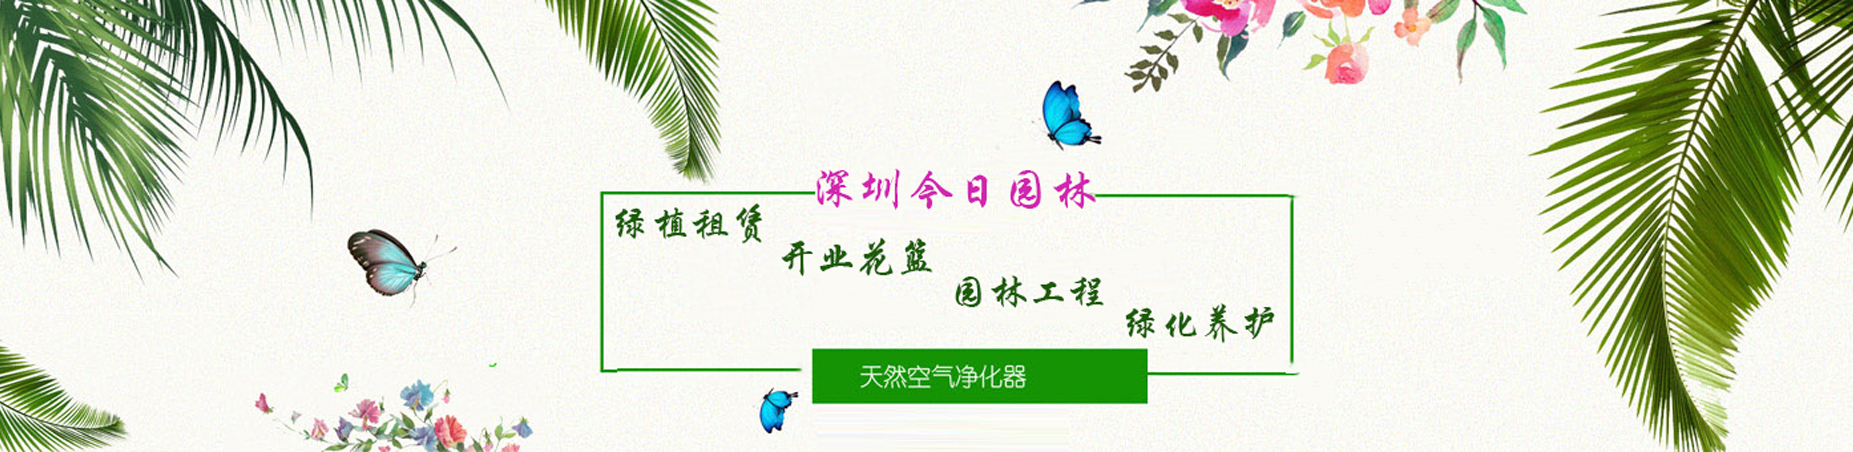 绿植租赁，找深圳市今日园林有限公司，电话：15361486313